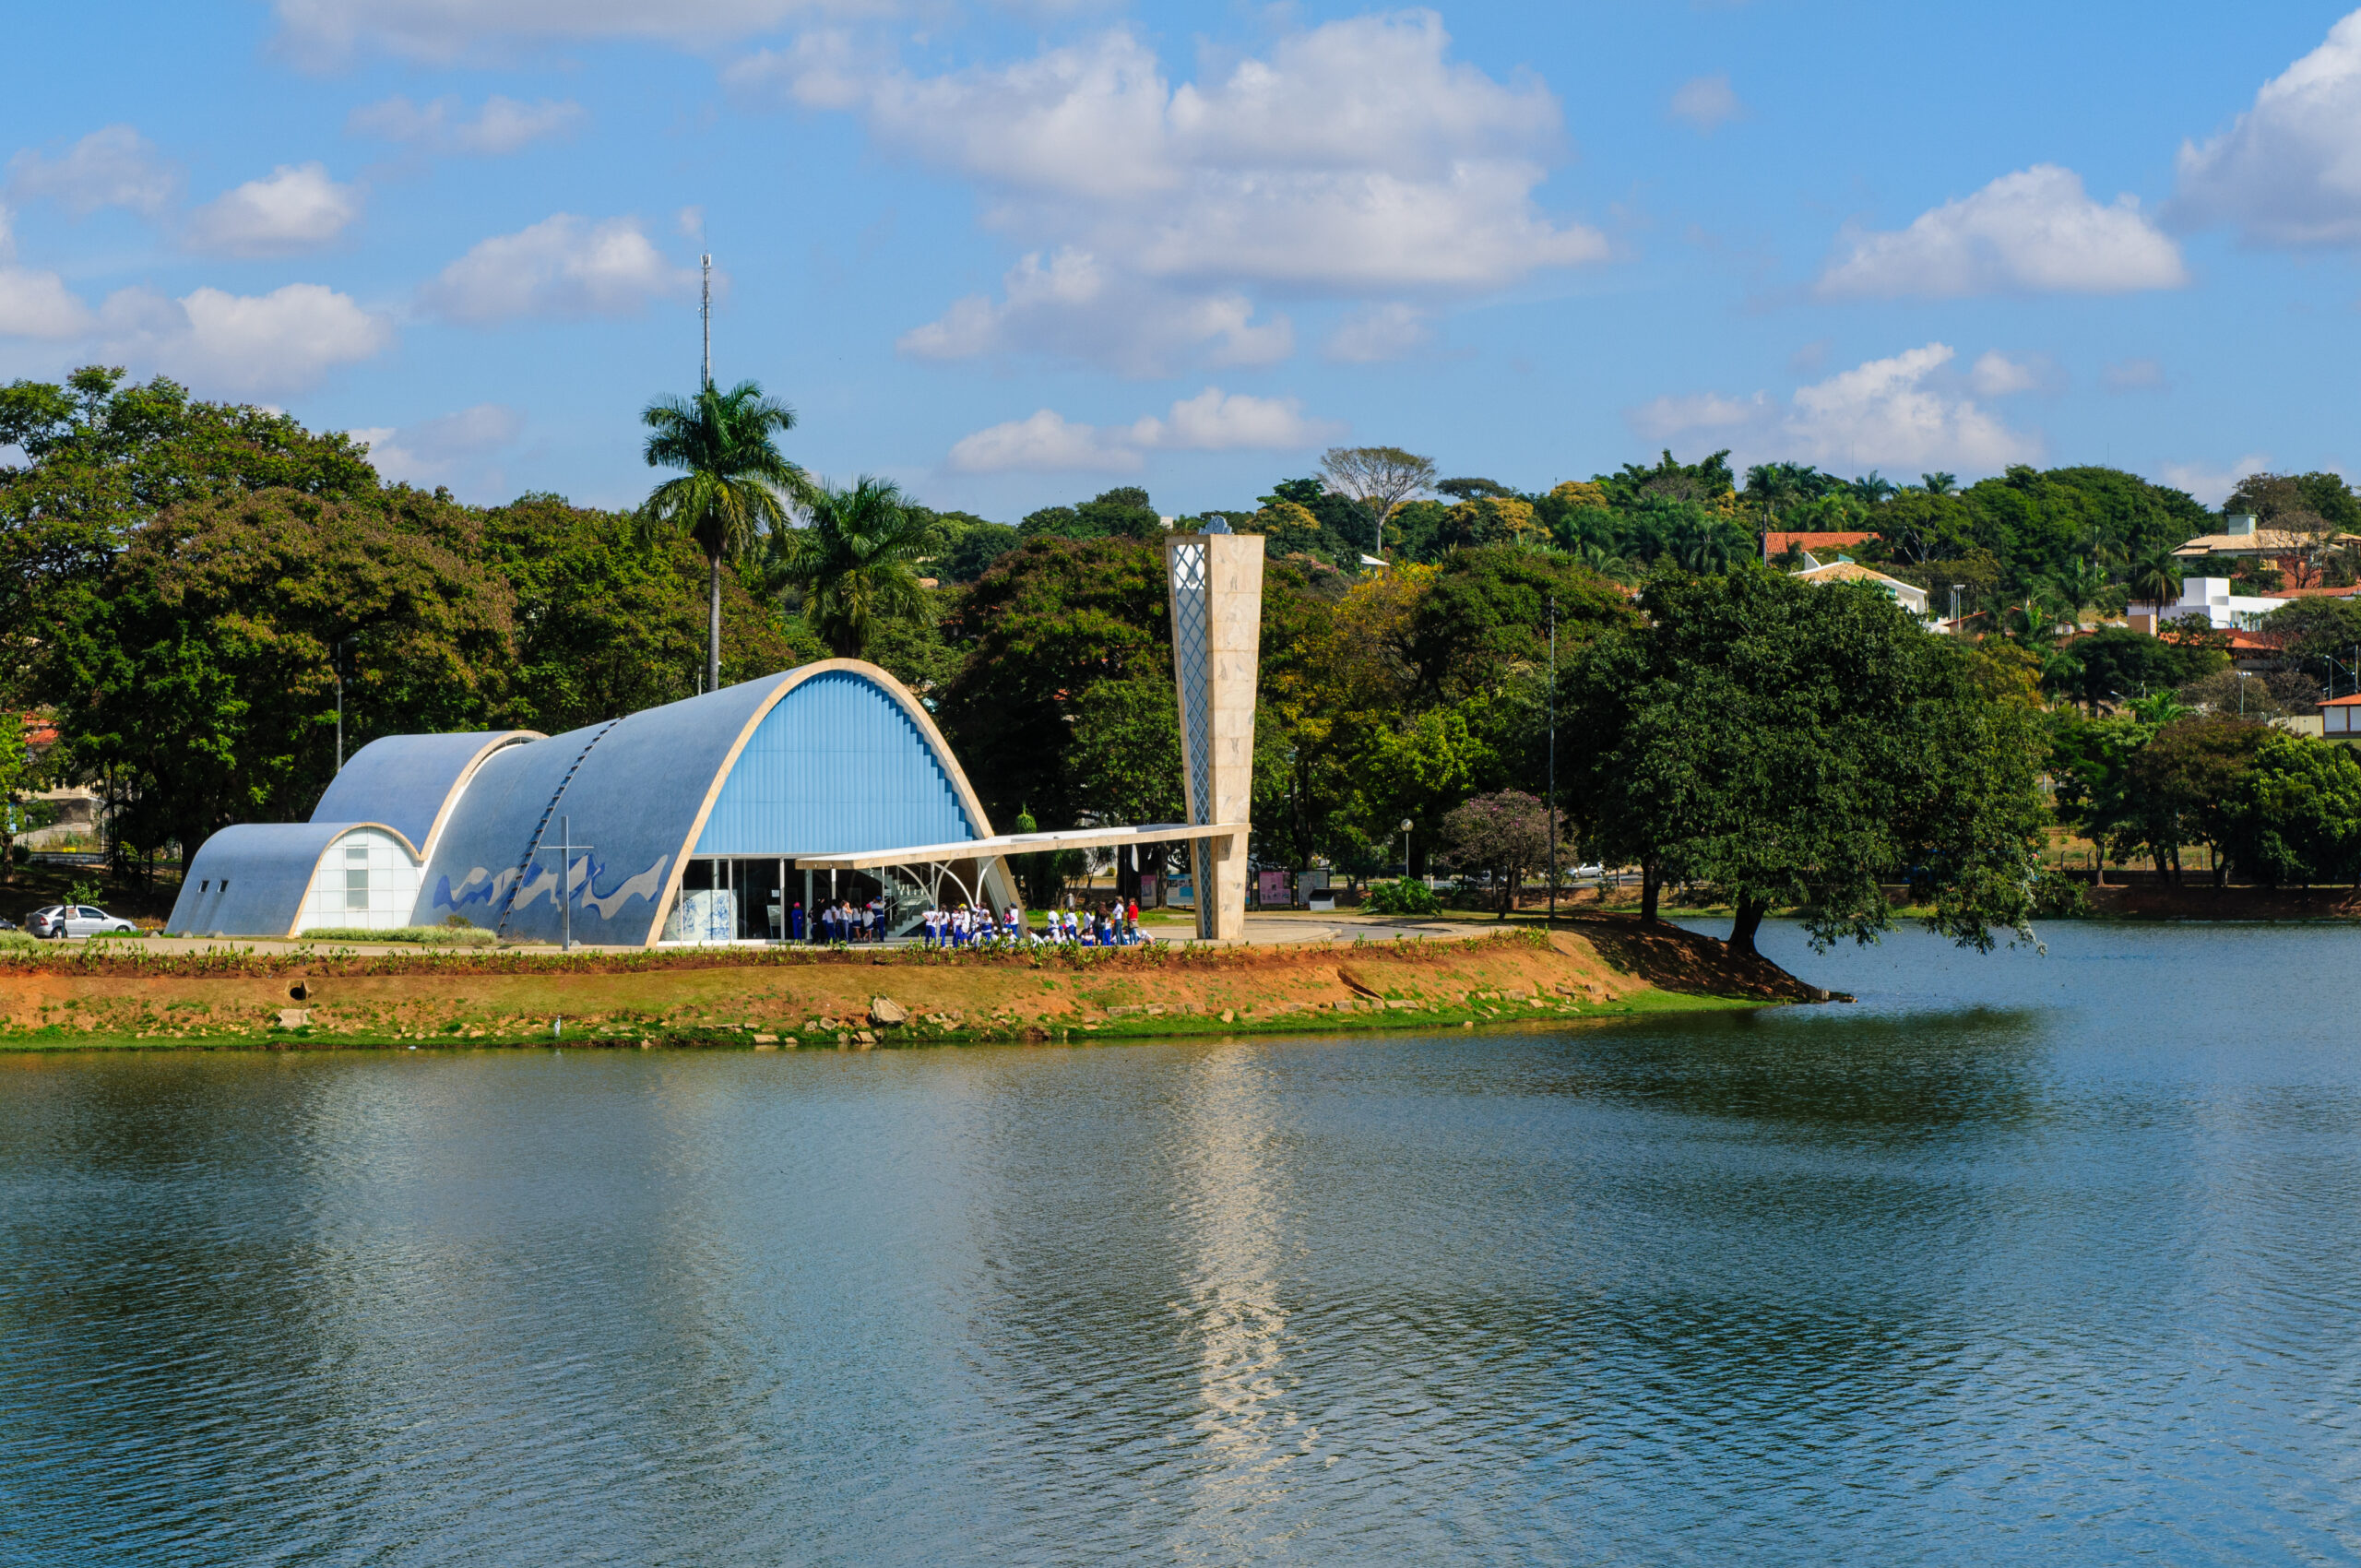 Abertura de Empresas em Belo Horizonte-MG: Conheça as soluções da CJF Contabilidade